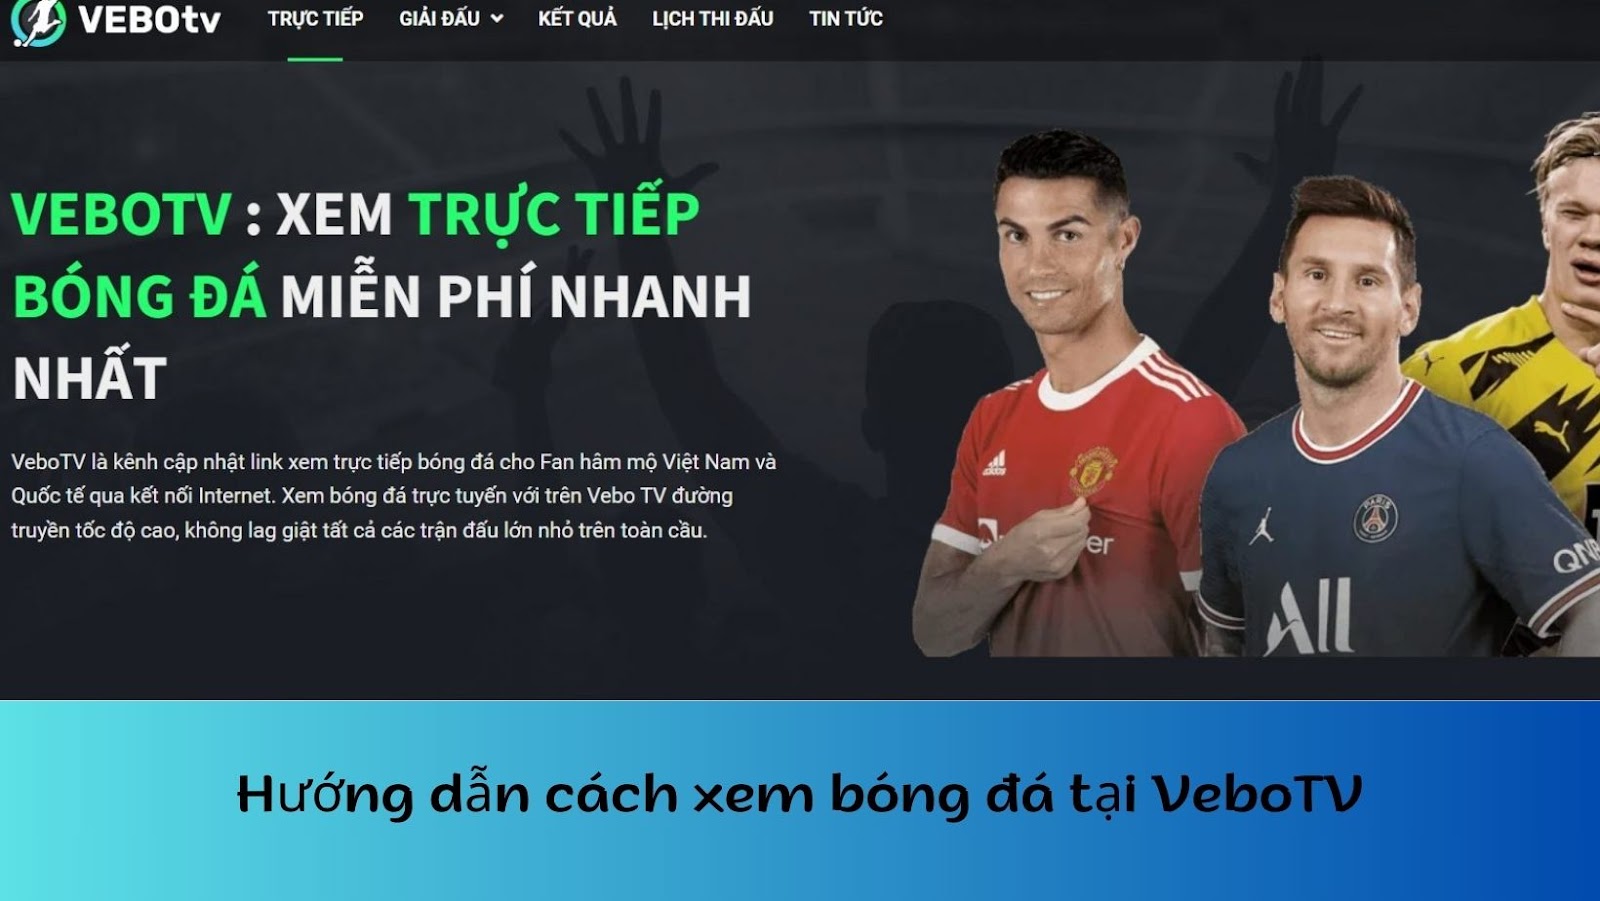 Hướng dẫn cách xem bóng đá trực tuyến miễn phí tại VeboTV-1